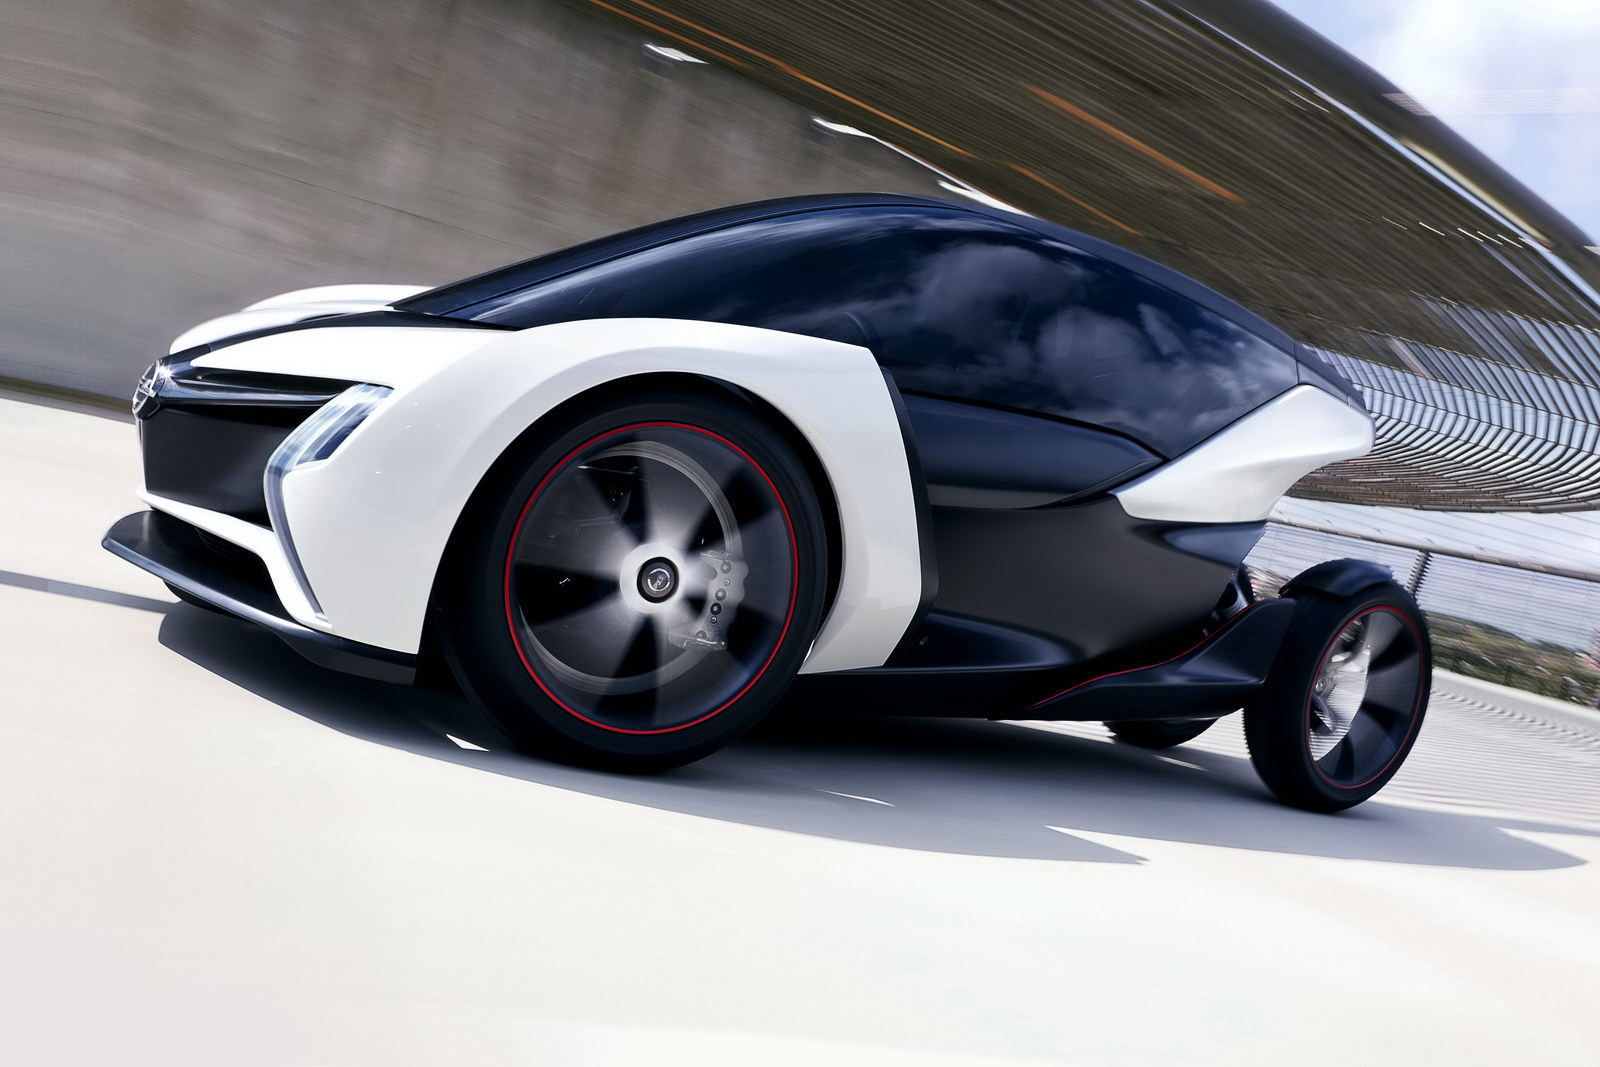 IAA 2011: Radical New Opel Concept 